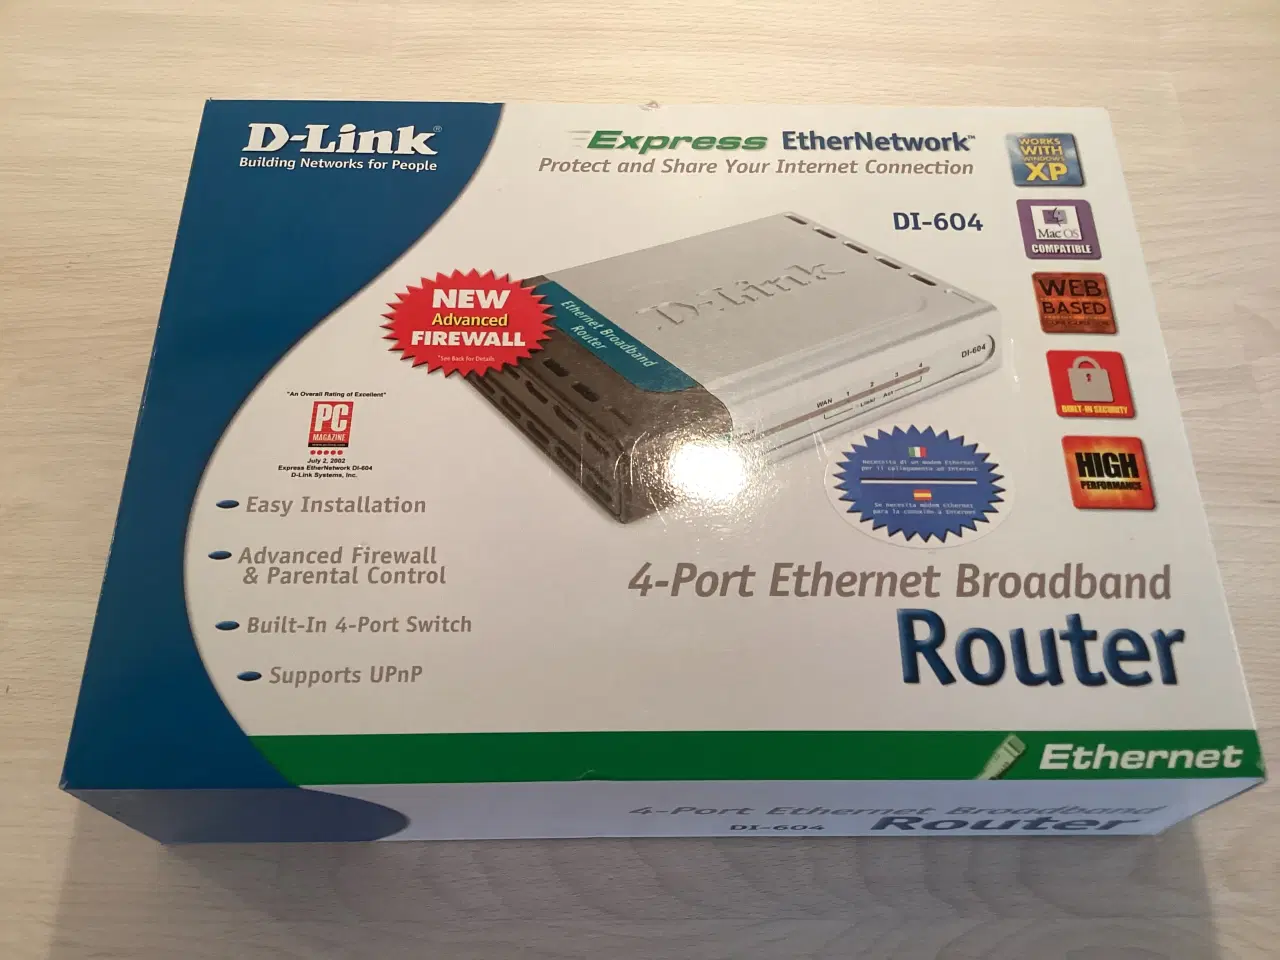 Billede 1 - Ubrugt D-Link Router DI-604 med 4 porte